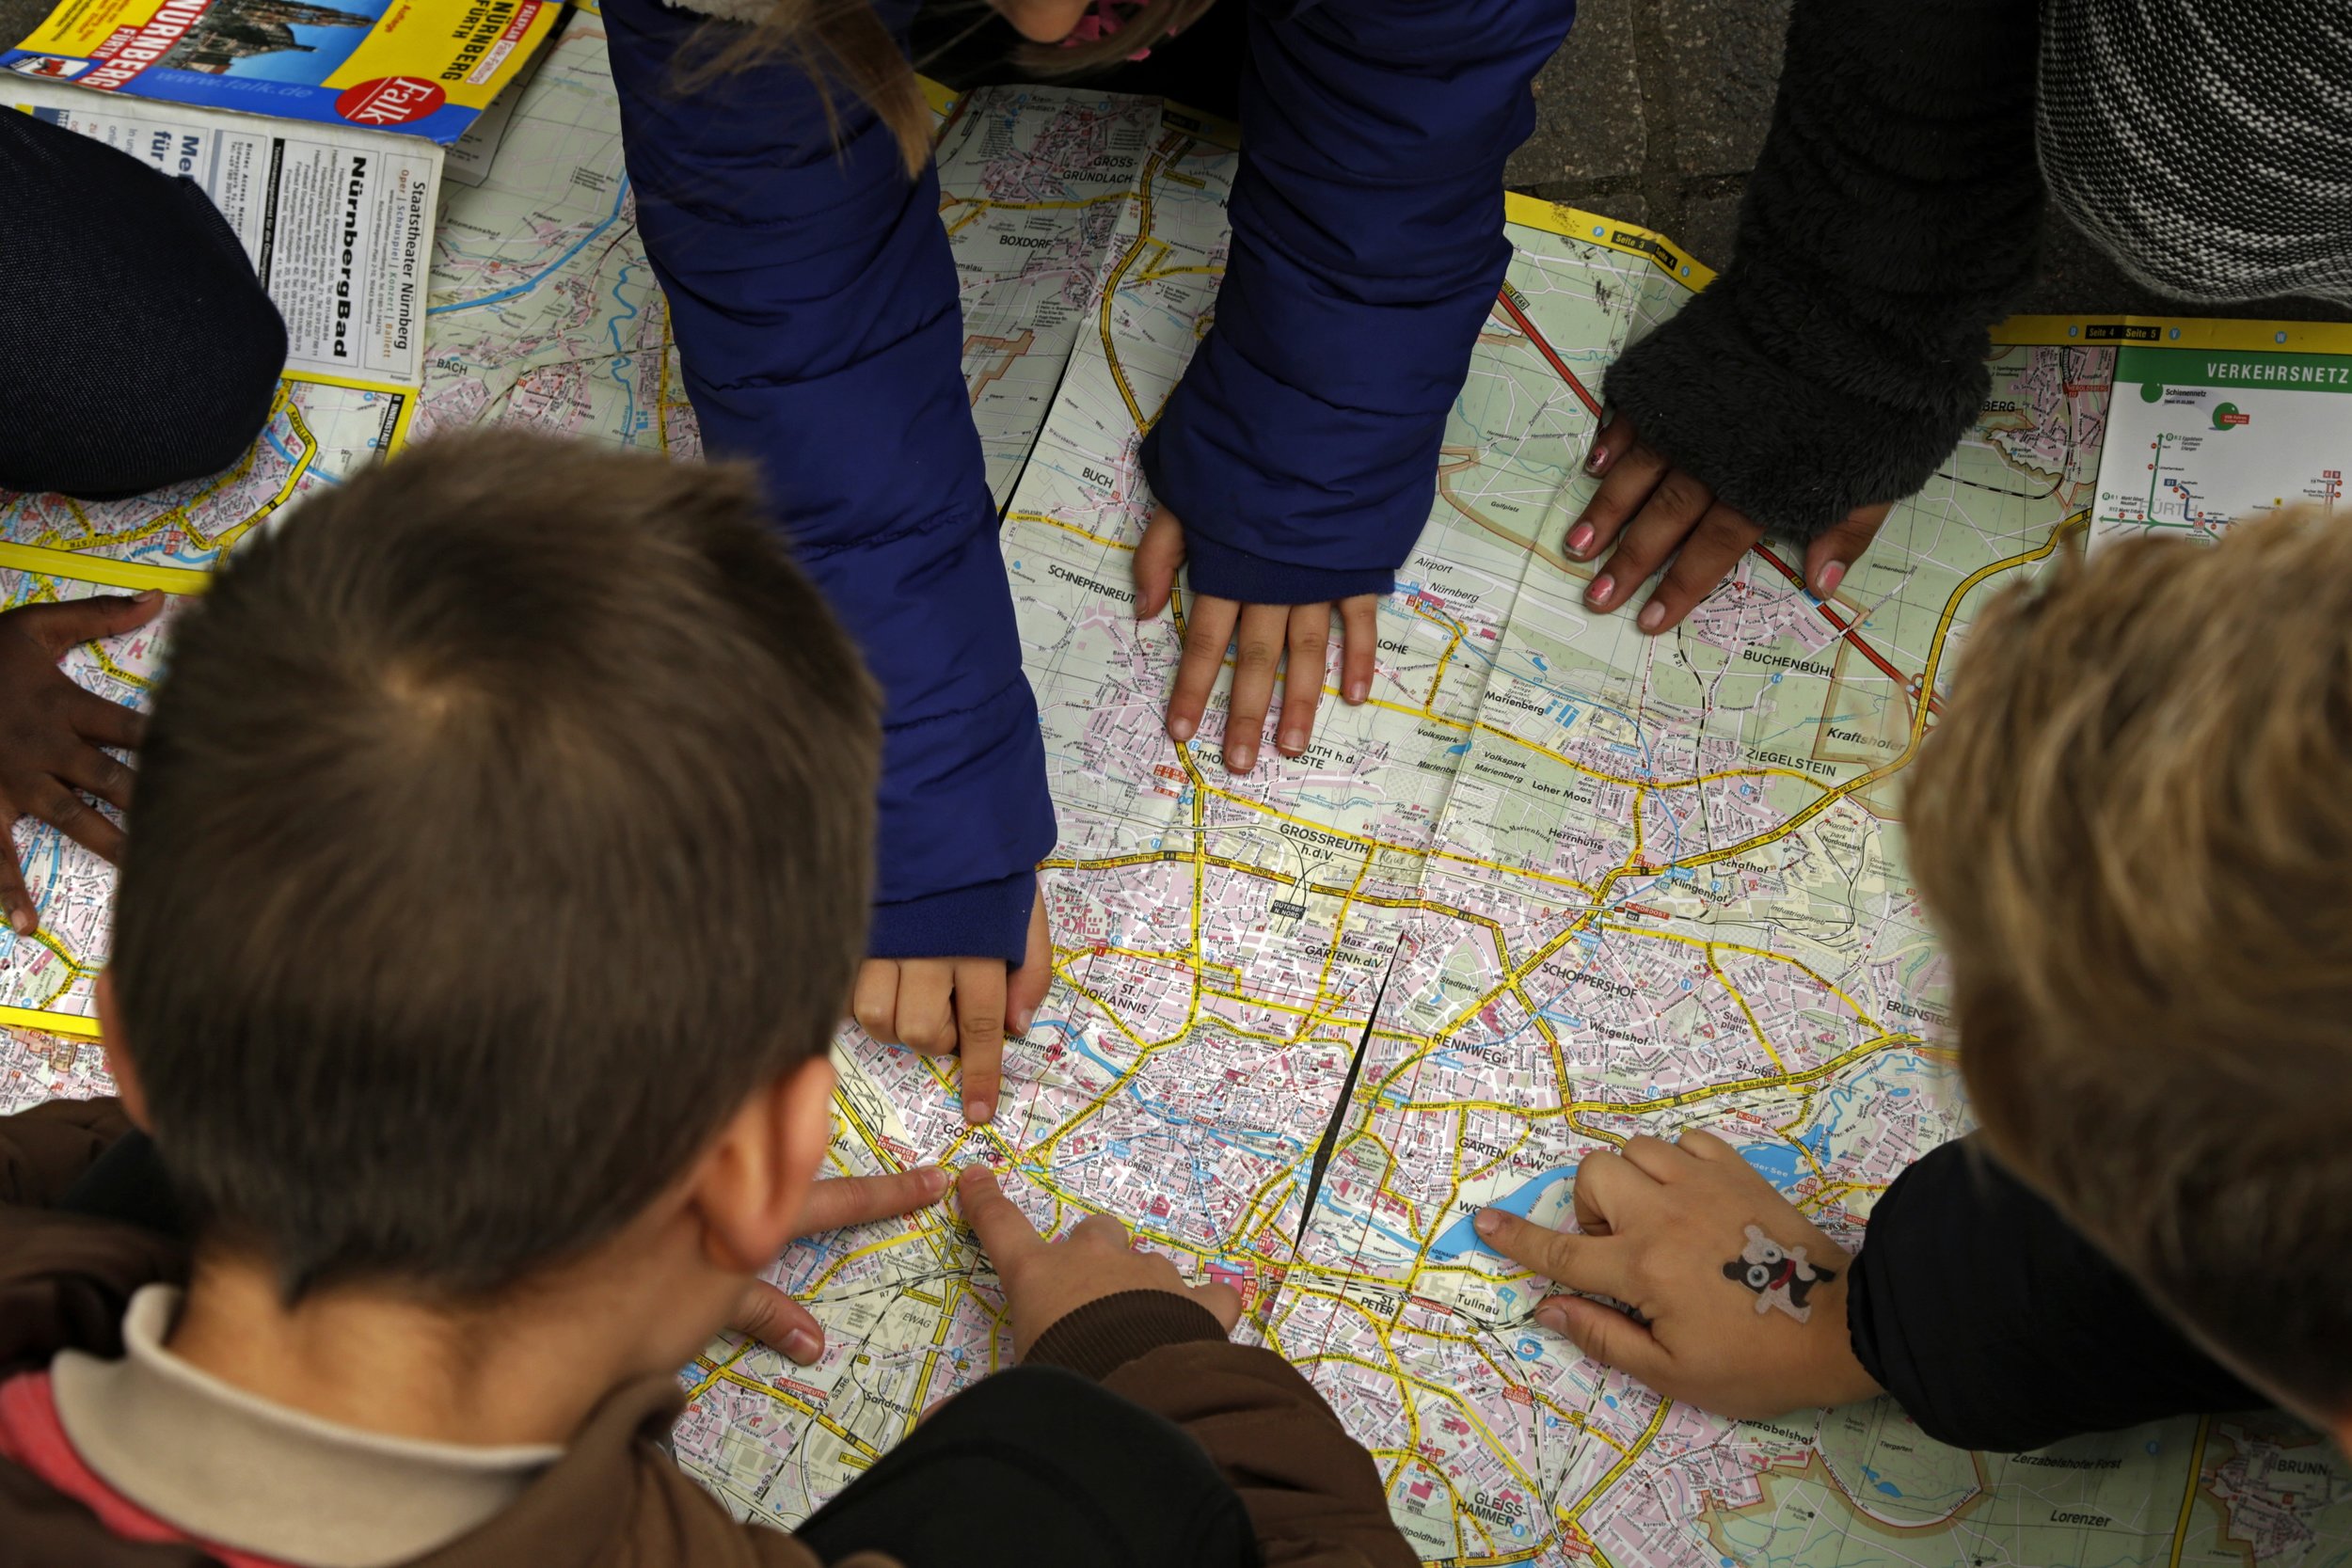 Bild aus dem Programm CHILDREN Entdecker (Kinderarmut): Kinder betrachten einen Stadtplan